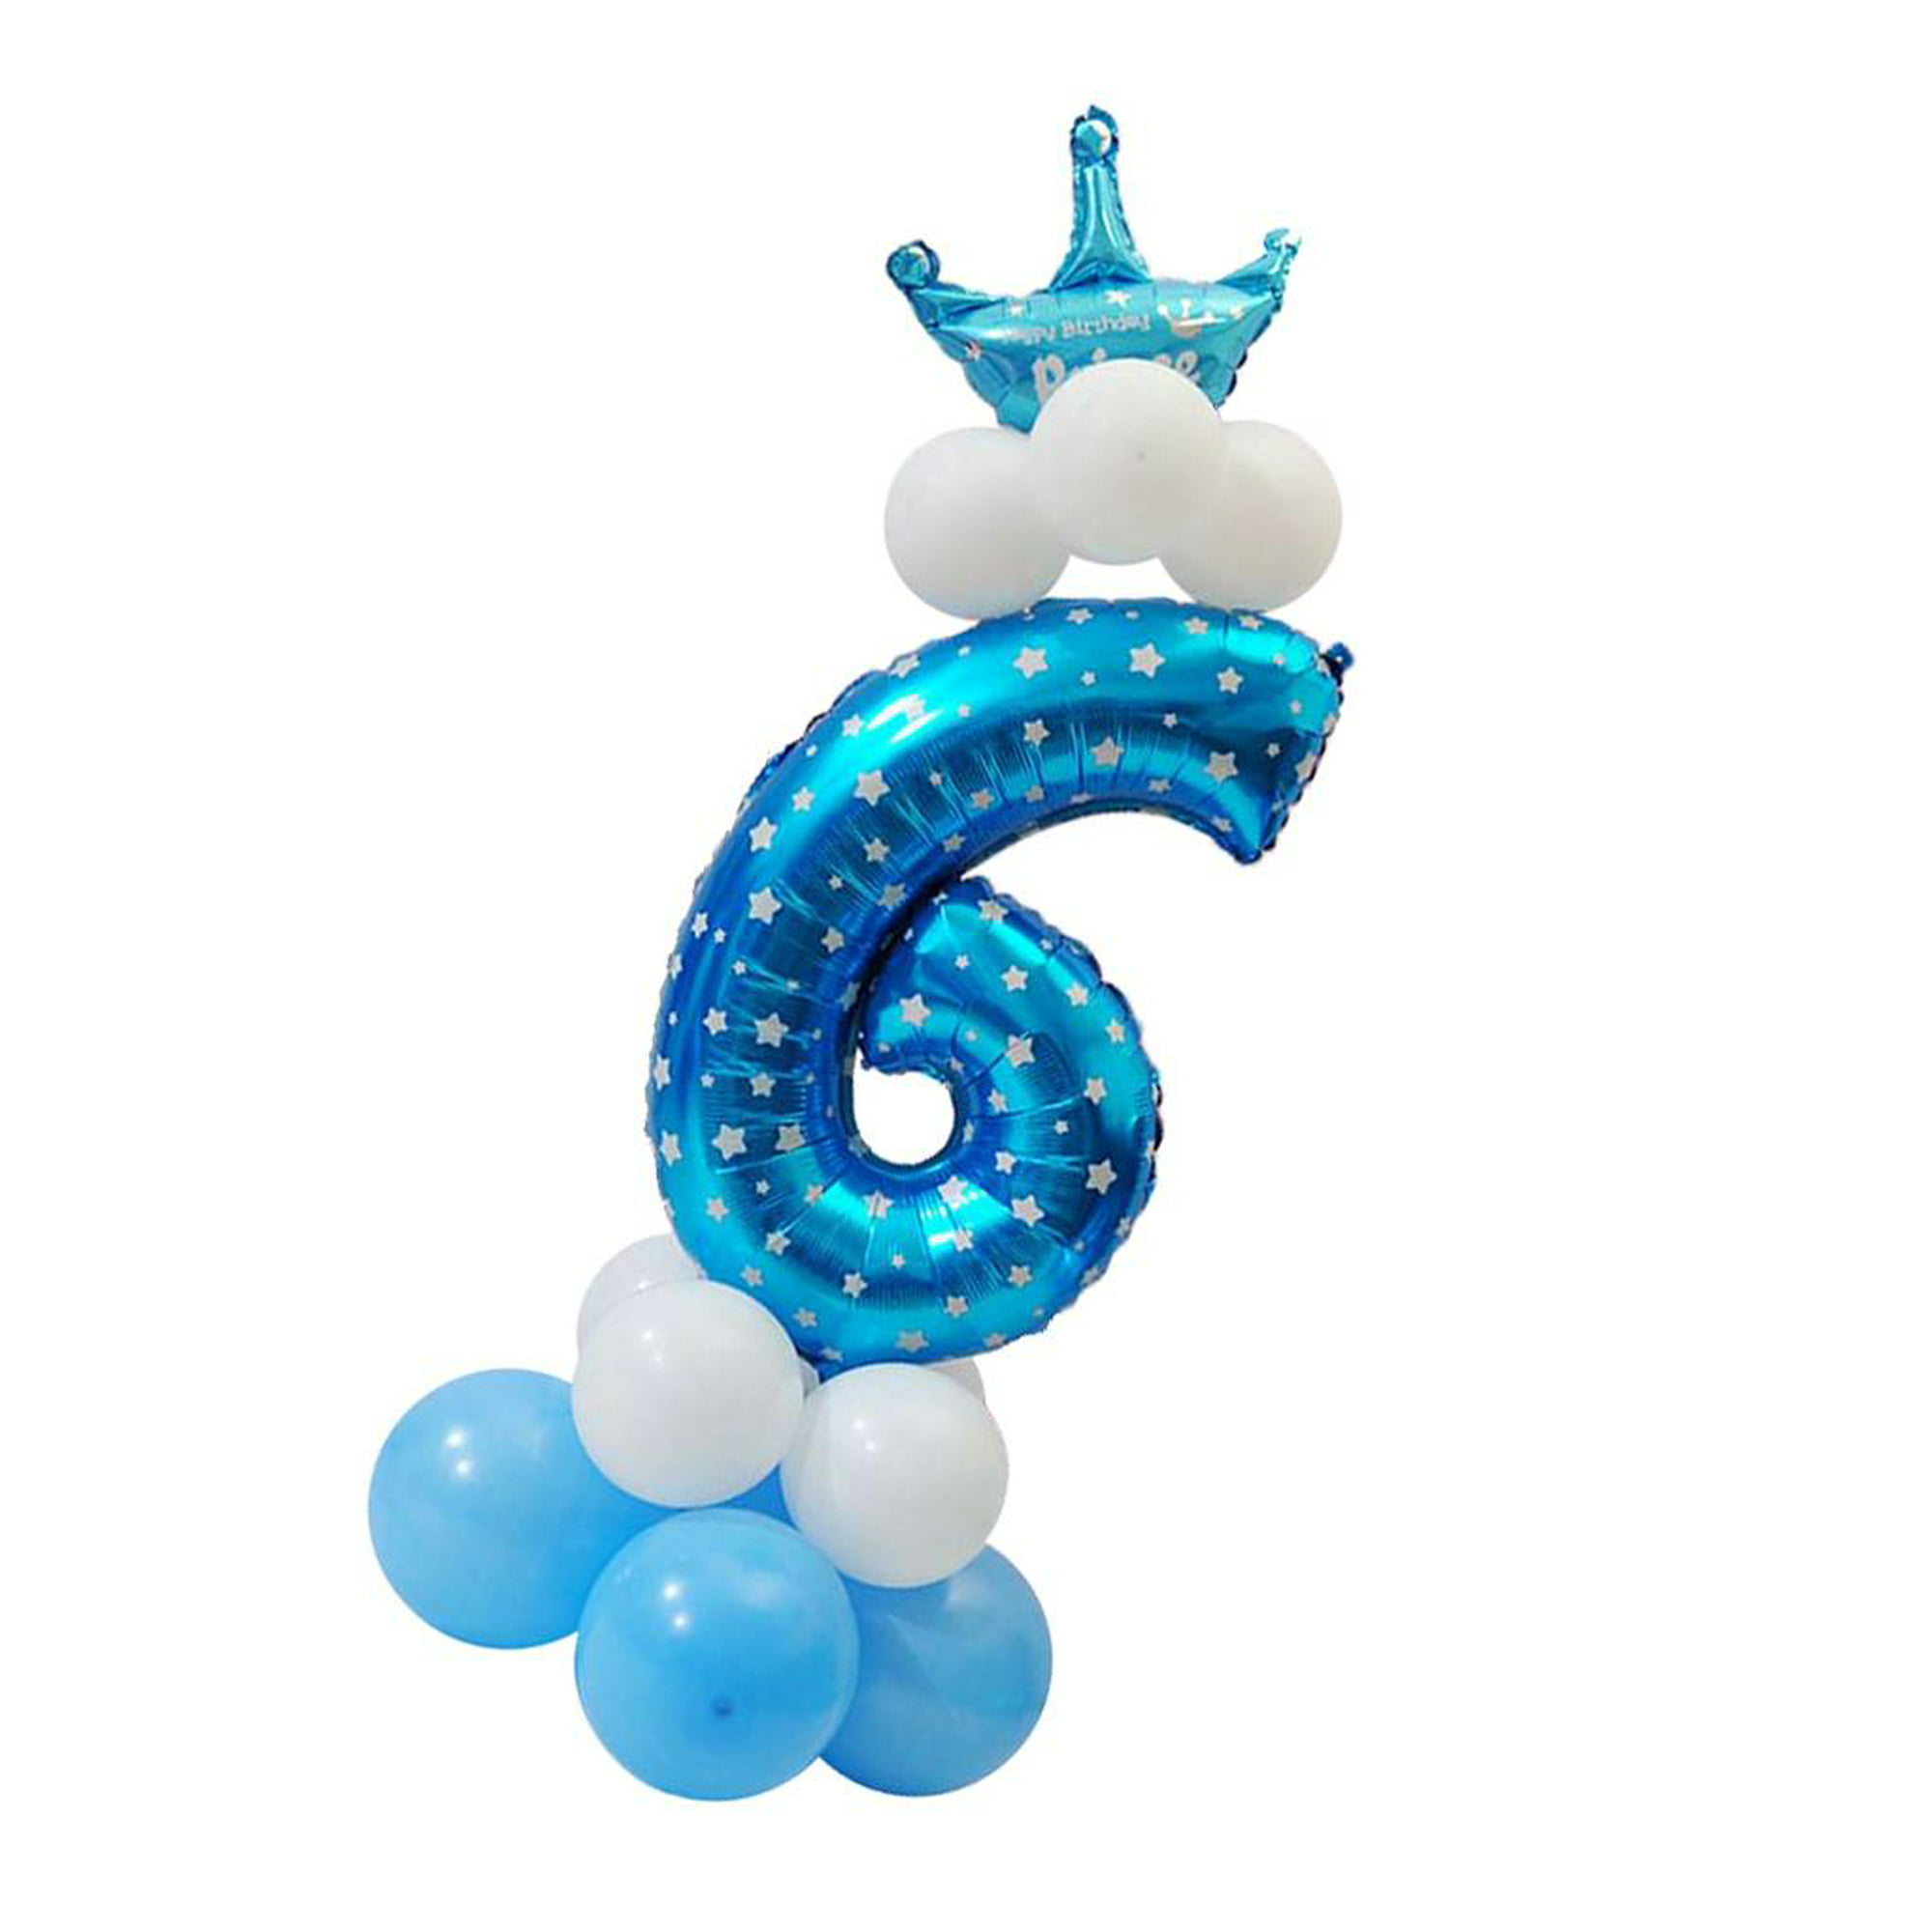  Globos con números de números grandes de 16 a 32 pulgadas con  números de 0 a 9 años para fiestas de cumpleaños y niños, Oro-7 : Juguetes  y Juegos